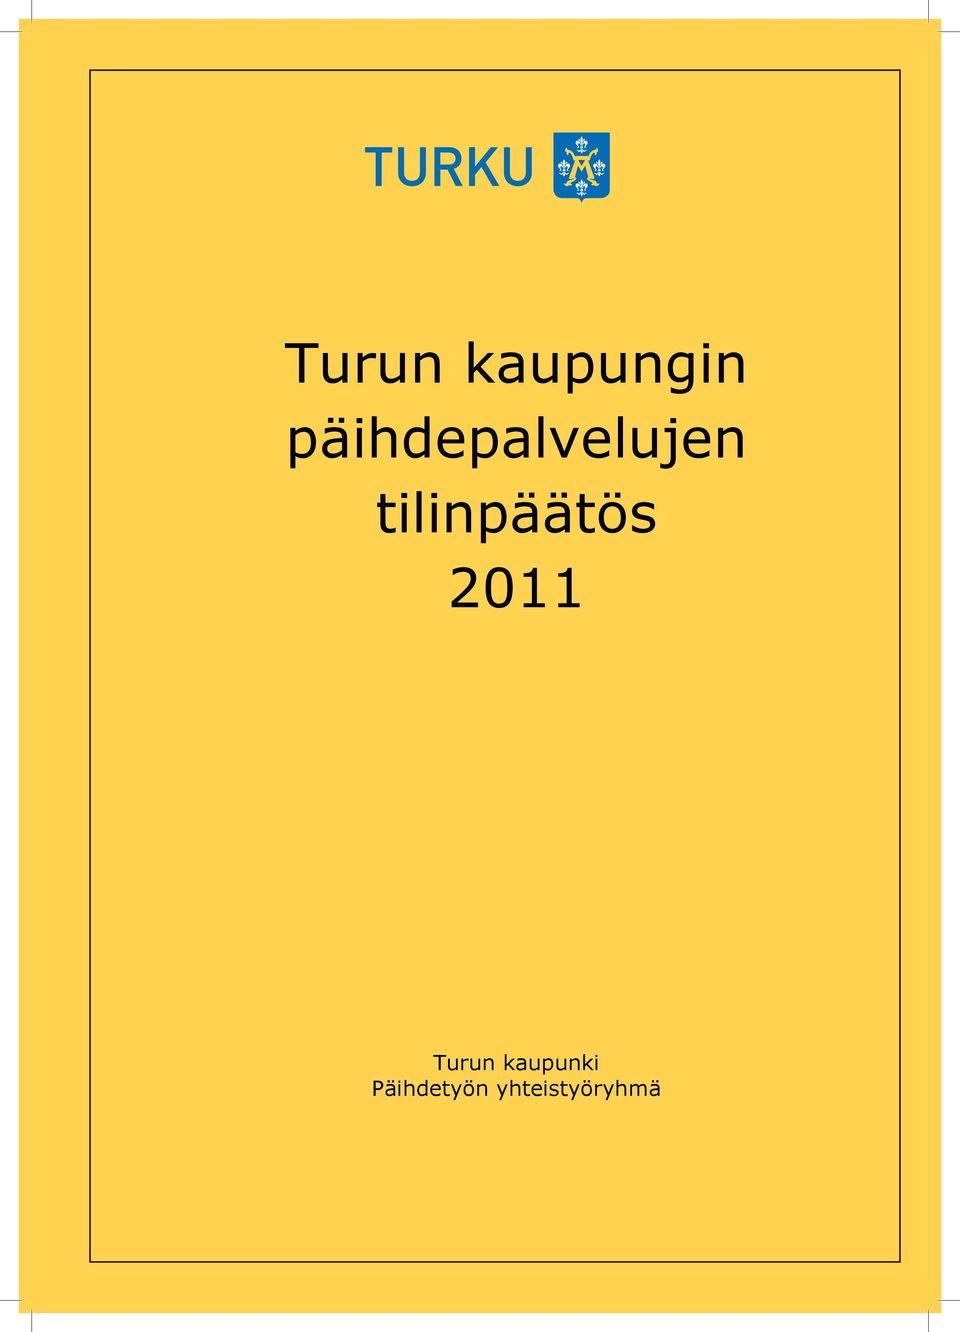 tilinpäätös 2011 Turun